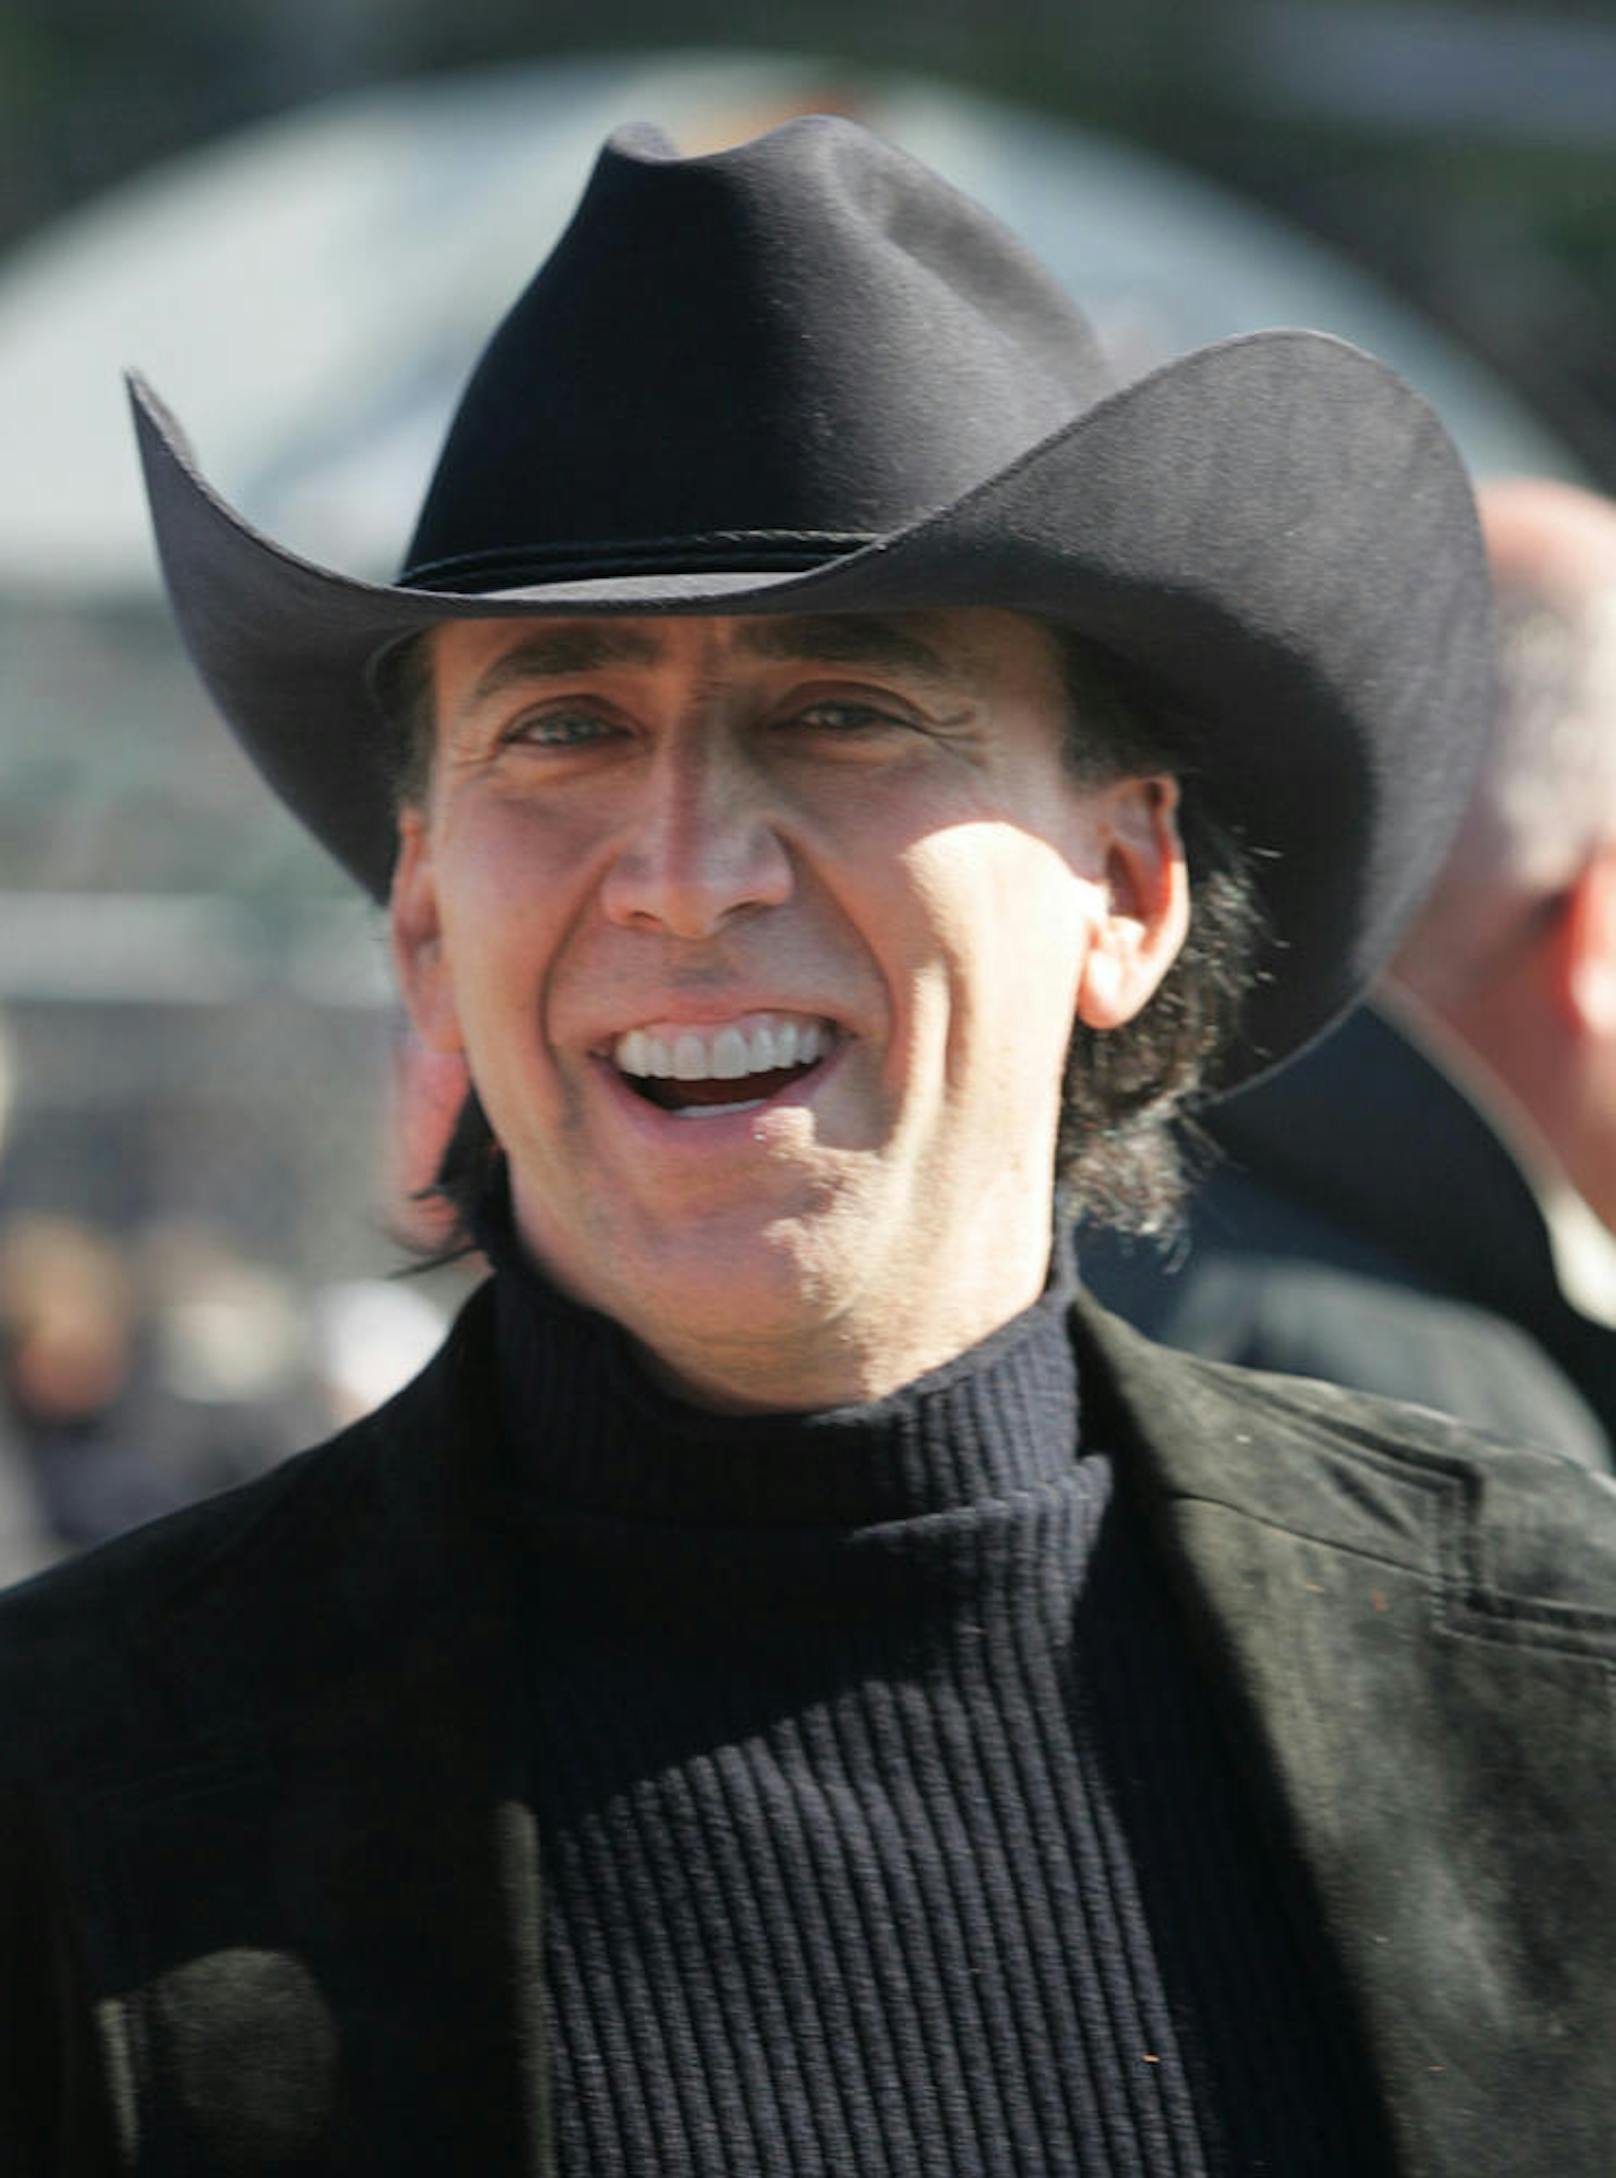 Nicolas Cage blecht 80.000 Dollar für Haustier